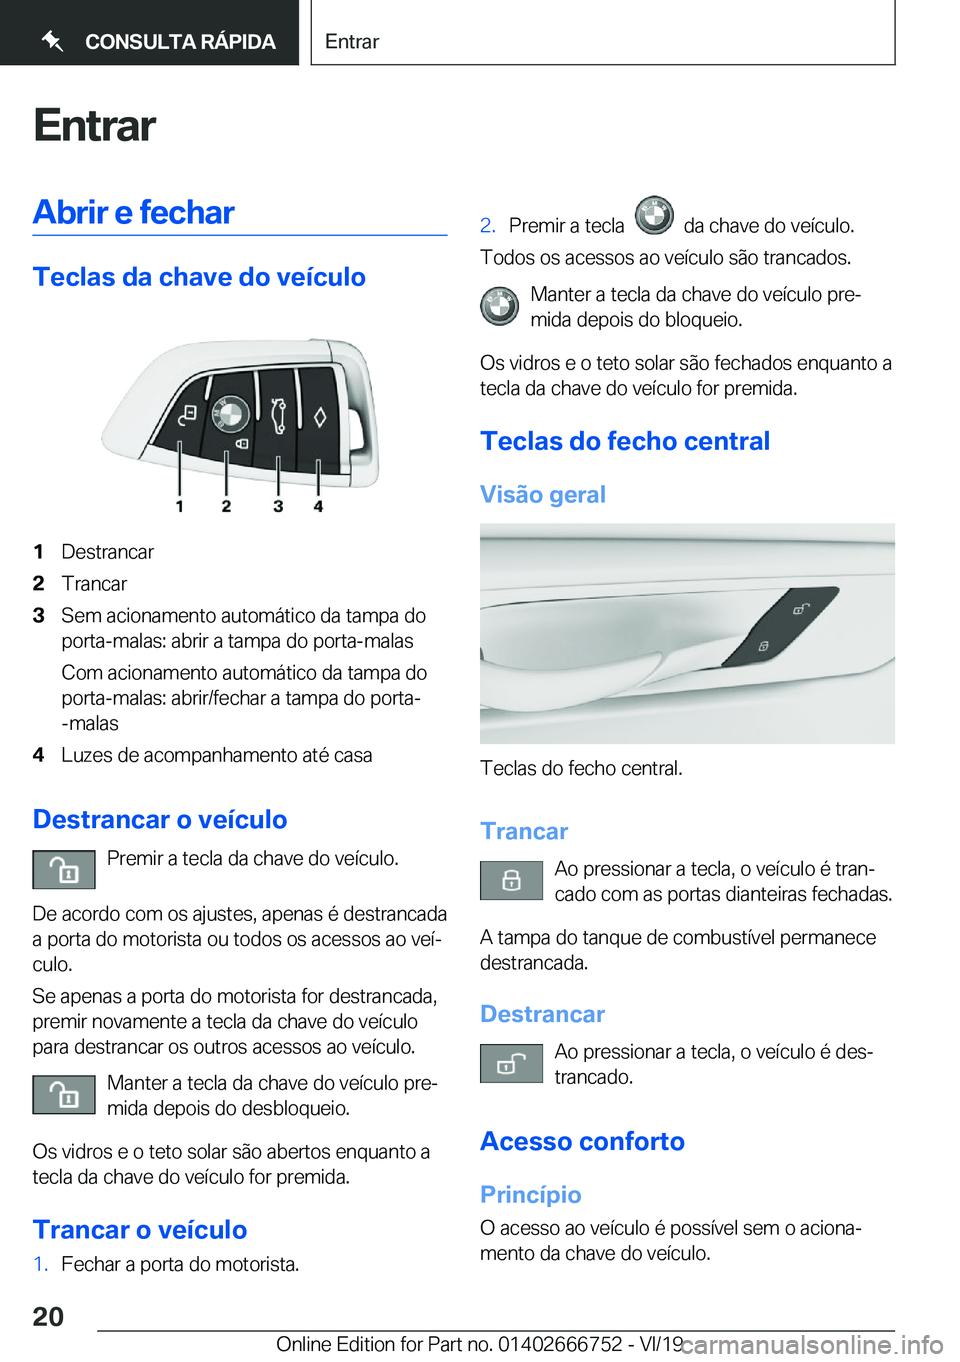 BMW M5 2020  Manual do condutor (in Portuguese) �E�n�t�r�a�r�A�b�r�i�r��e��f�e�c�h�a�r
�T�e�c�l�a�s��d�a��c�h�a�v�e��d�o��v�e�